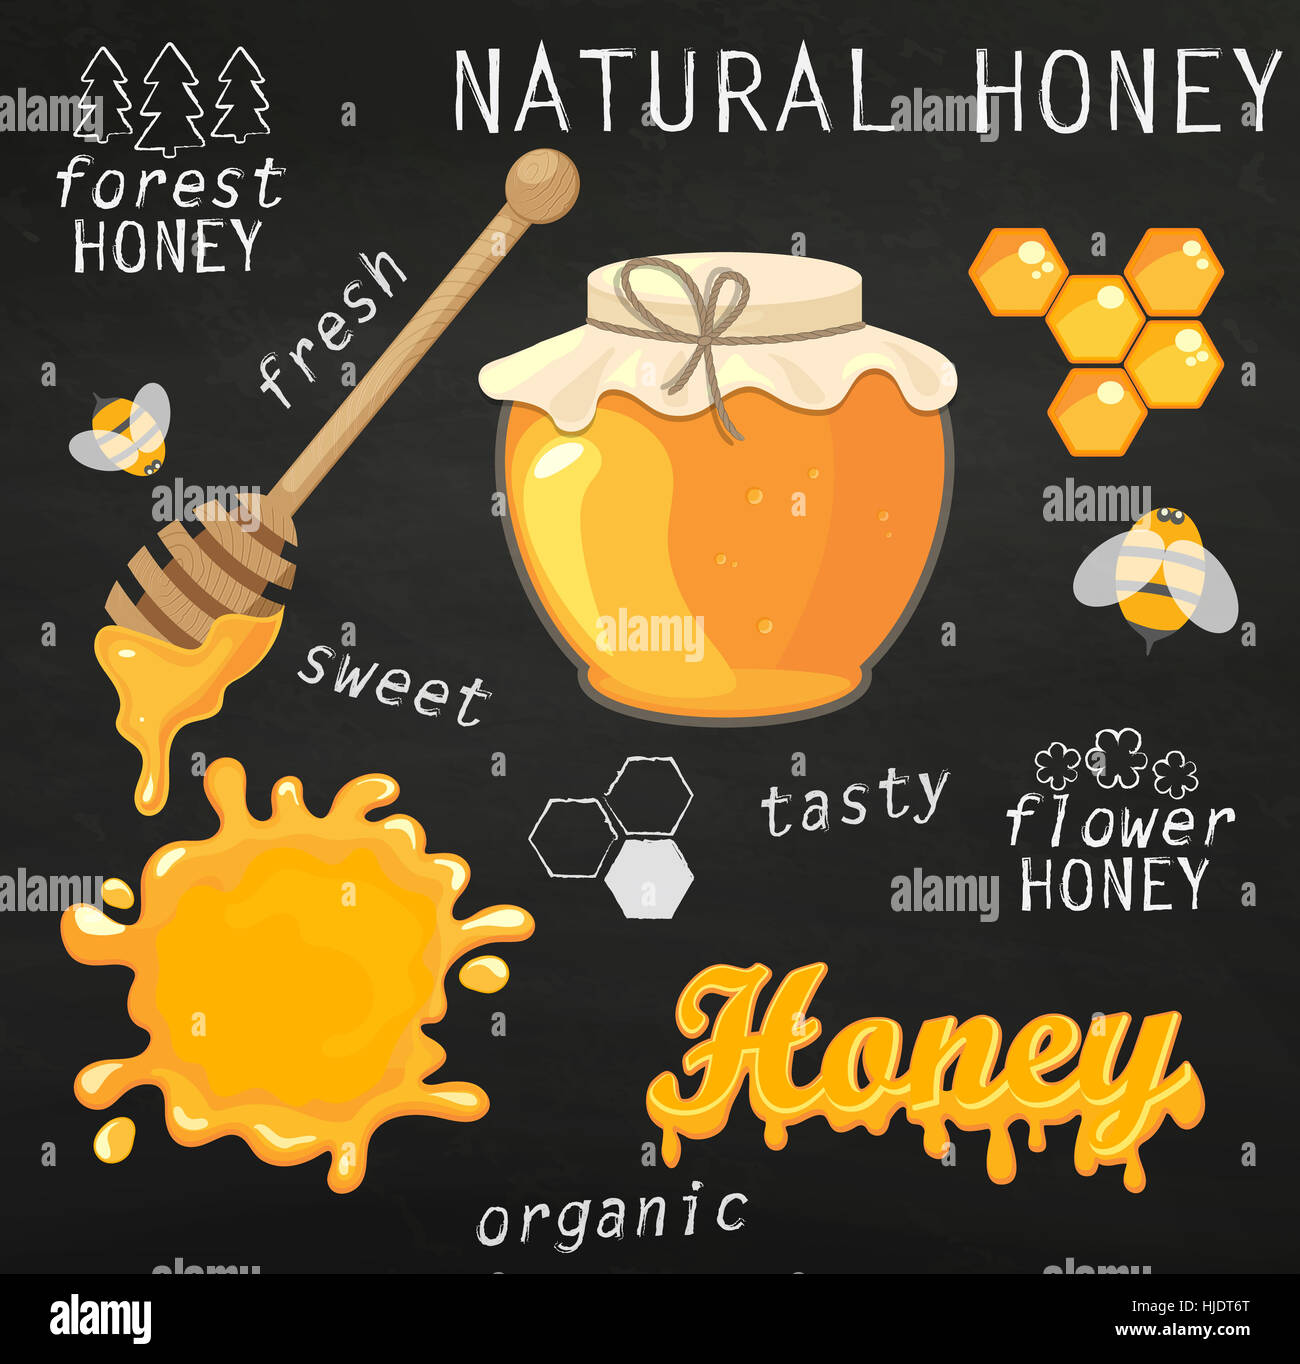 Illustration vecteur ensemble de pots de miel, miel, lettrage et abeilles sur tableau. Santé naturelle de la production alimentaire. Banque D'Images